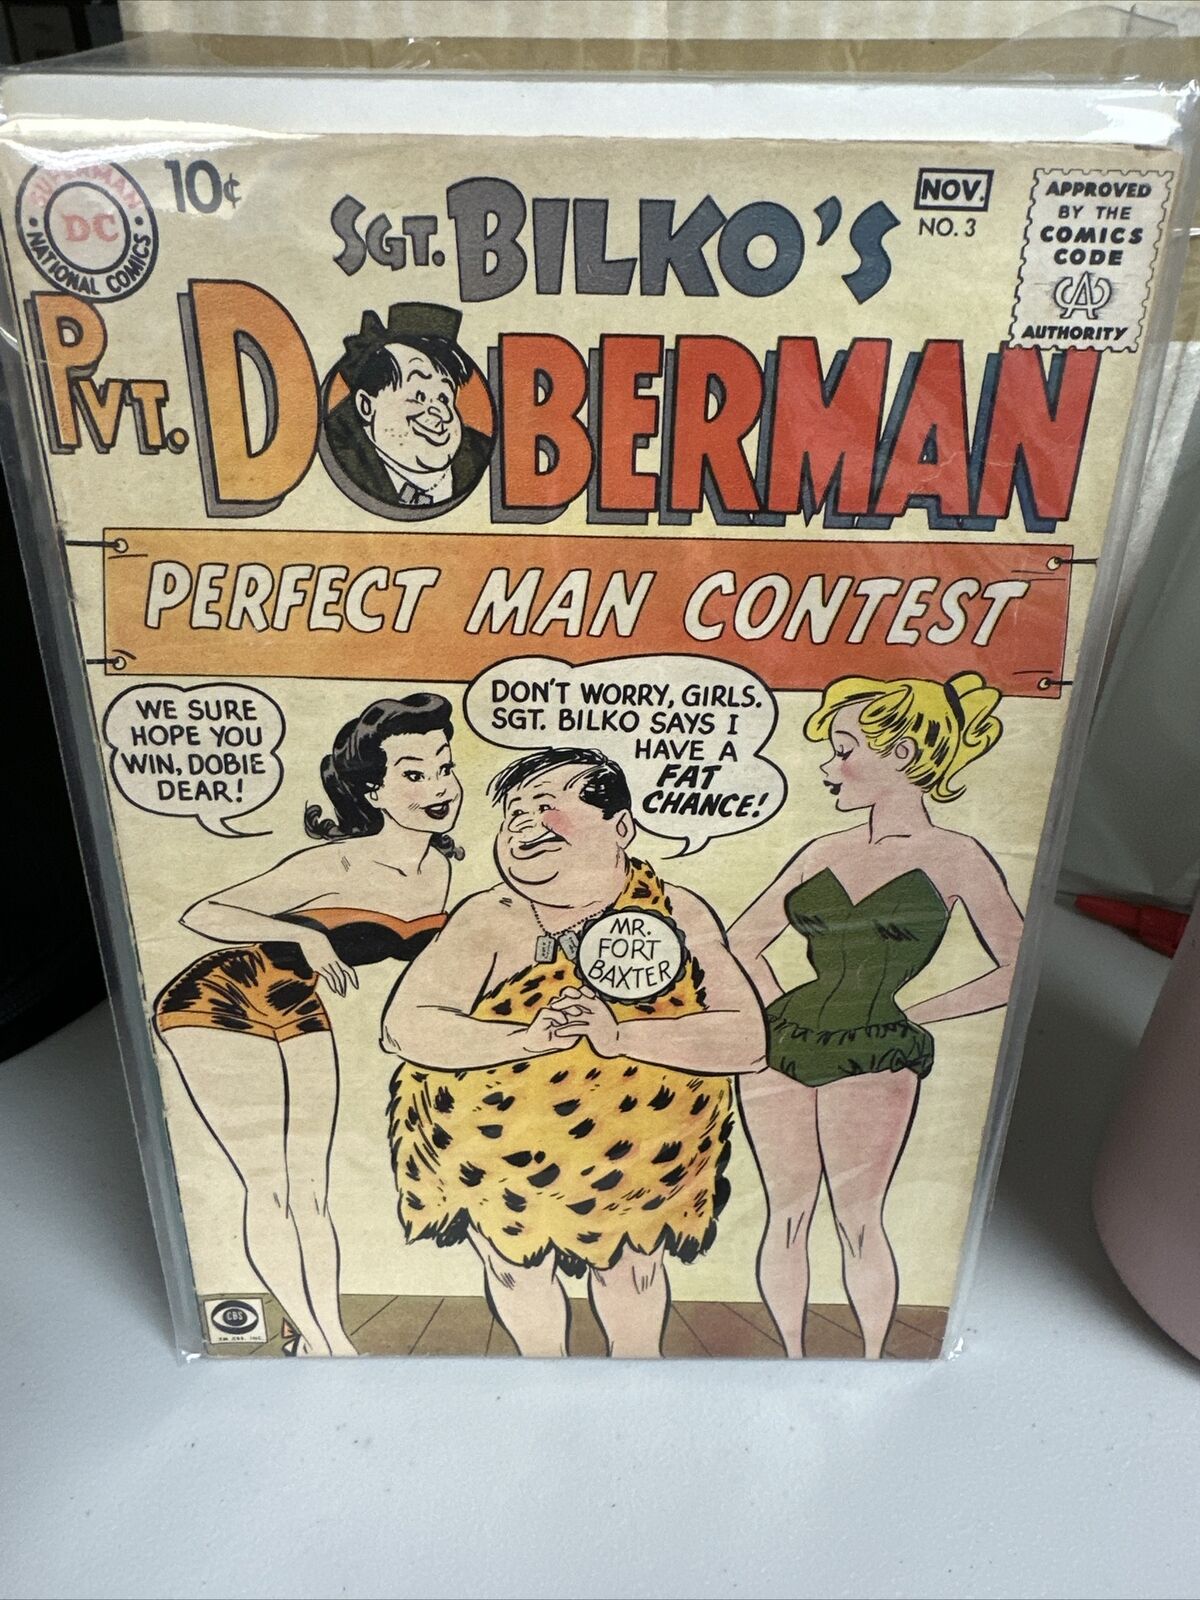 DC Sgt Bilko's Pvt Doberman #3 Silver Age 1958 Comic Book A1